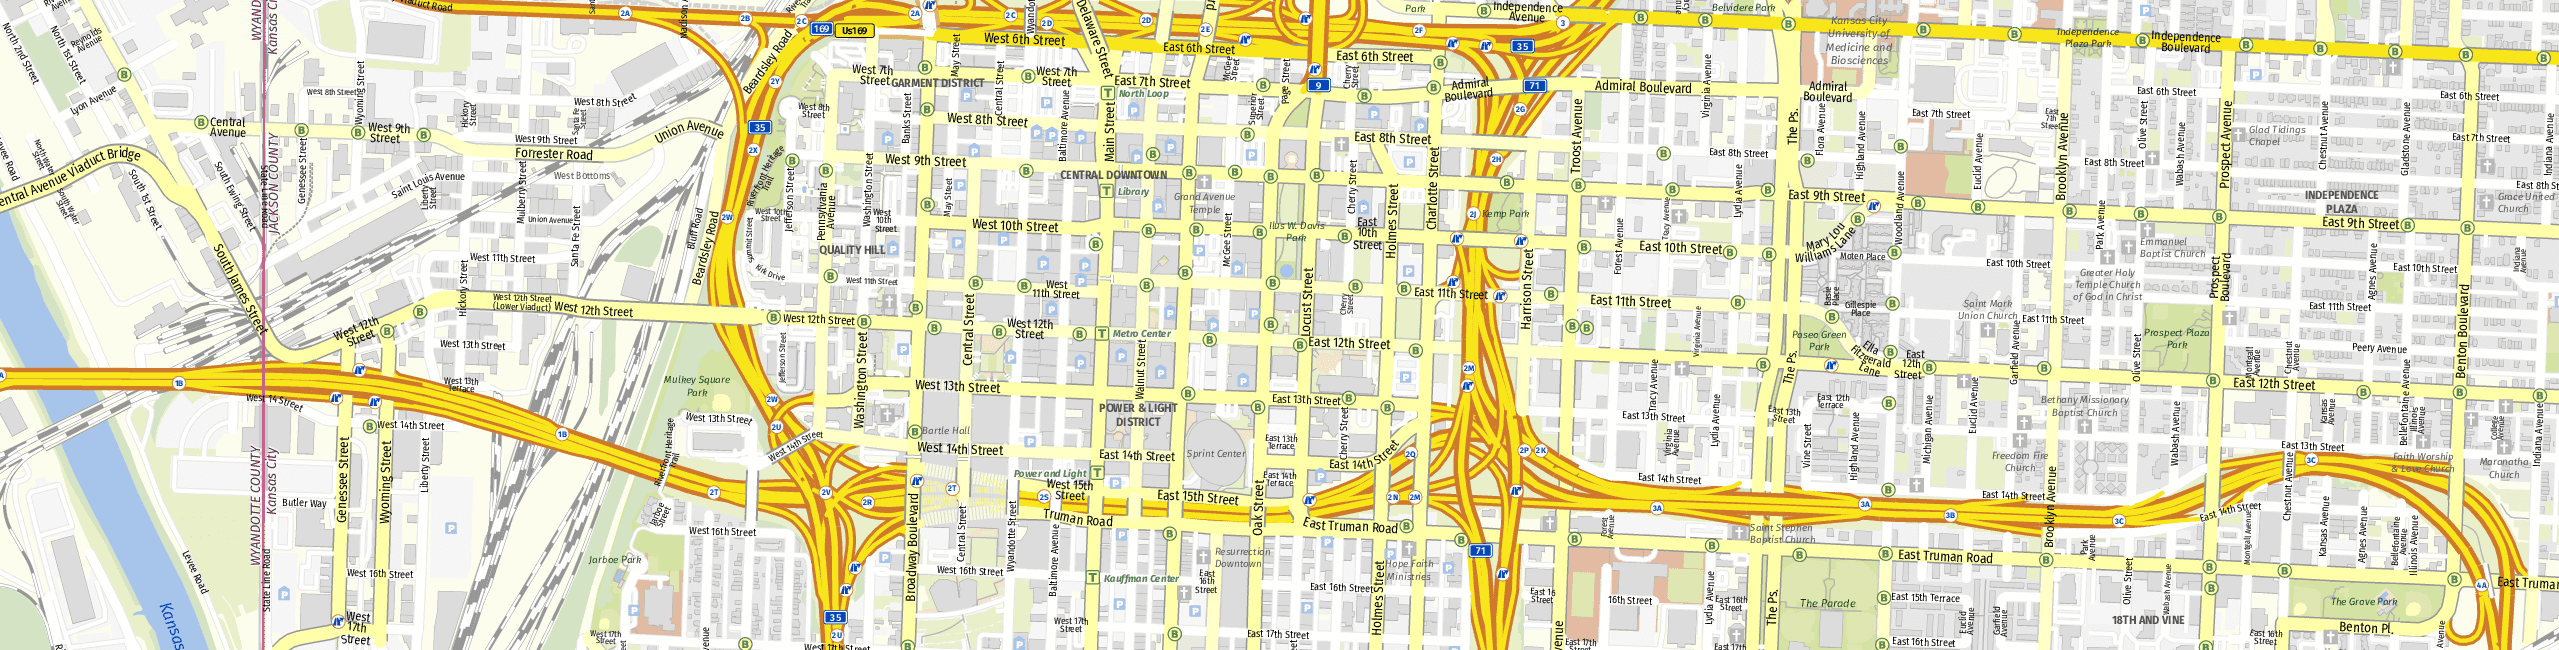 Stadtplan Kansas City zum Downloaden.